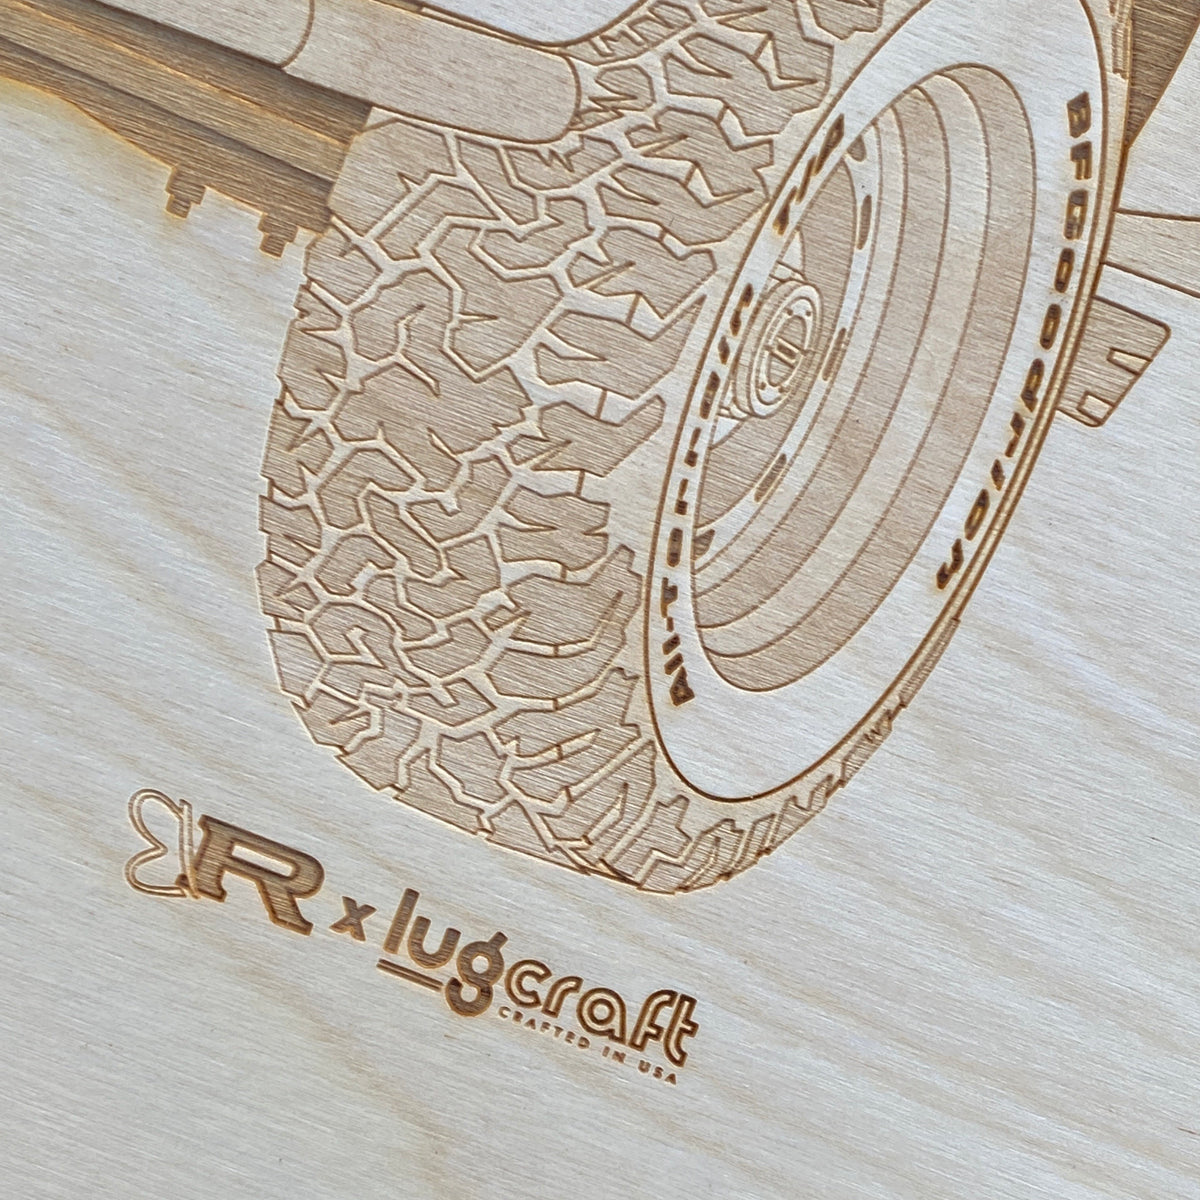 Ringbrothers SEAKER K5 Blazer Framed Wood Engraved Artwork